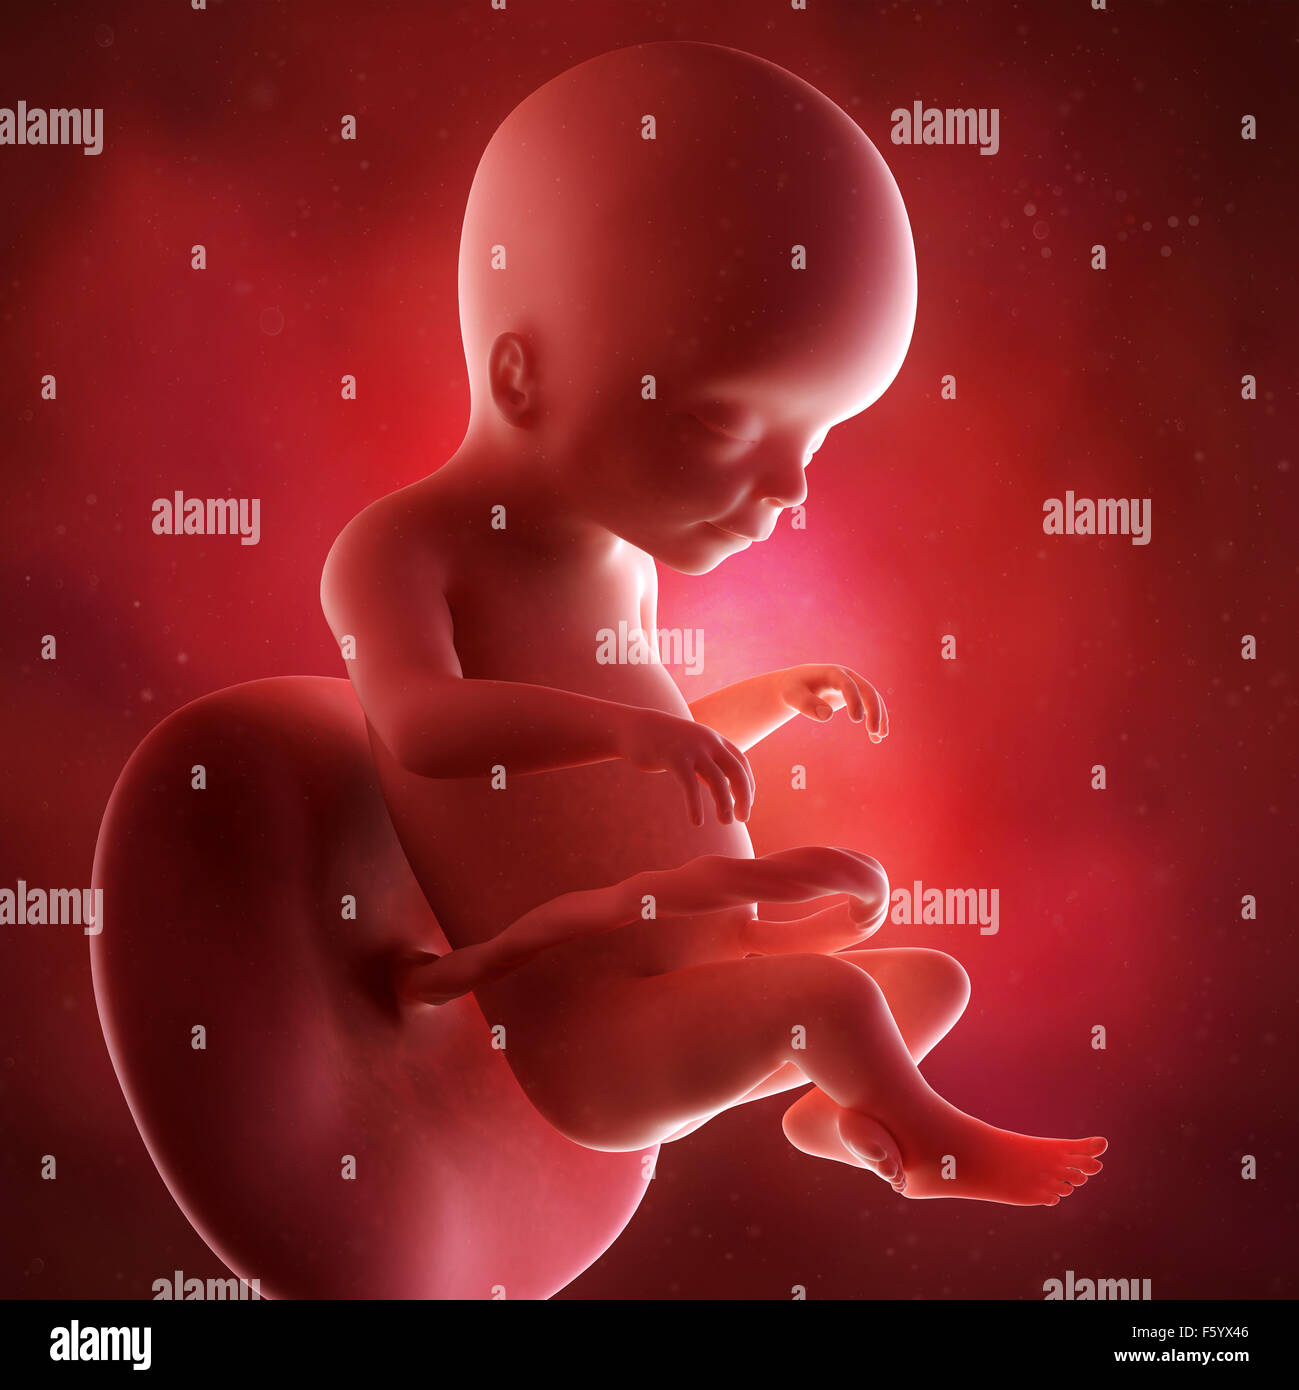 Précision médicale 3d illustration d'un foetus semaine 20 Banque D'Images